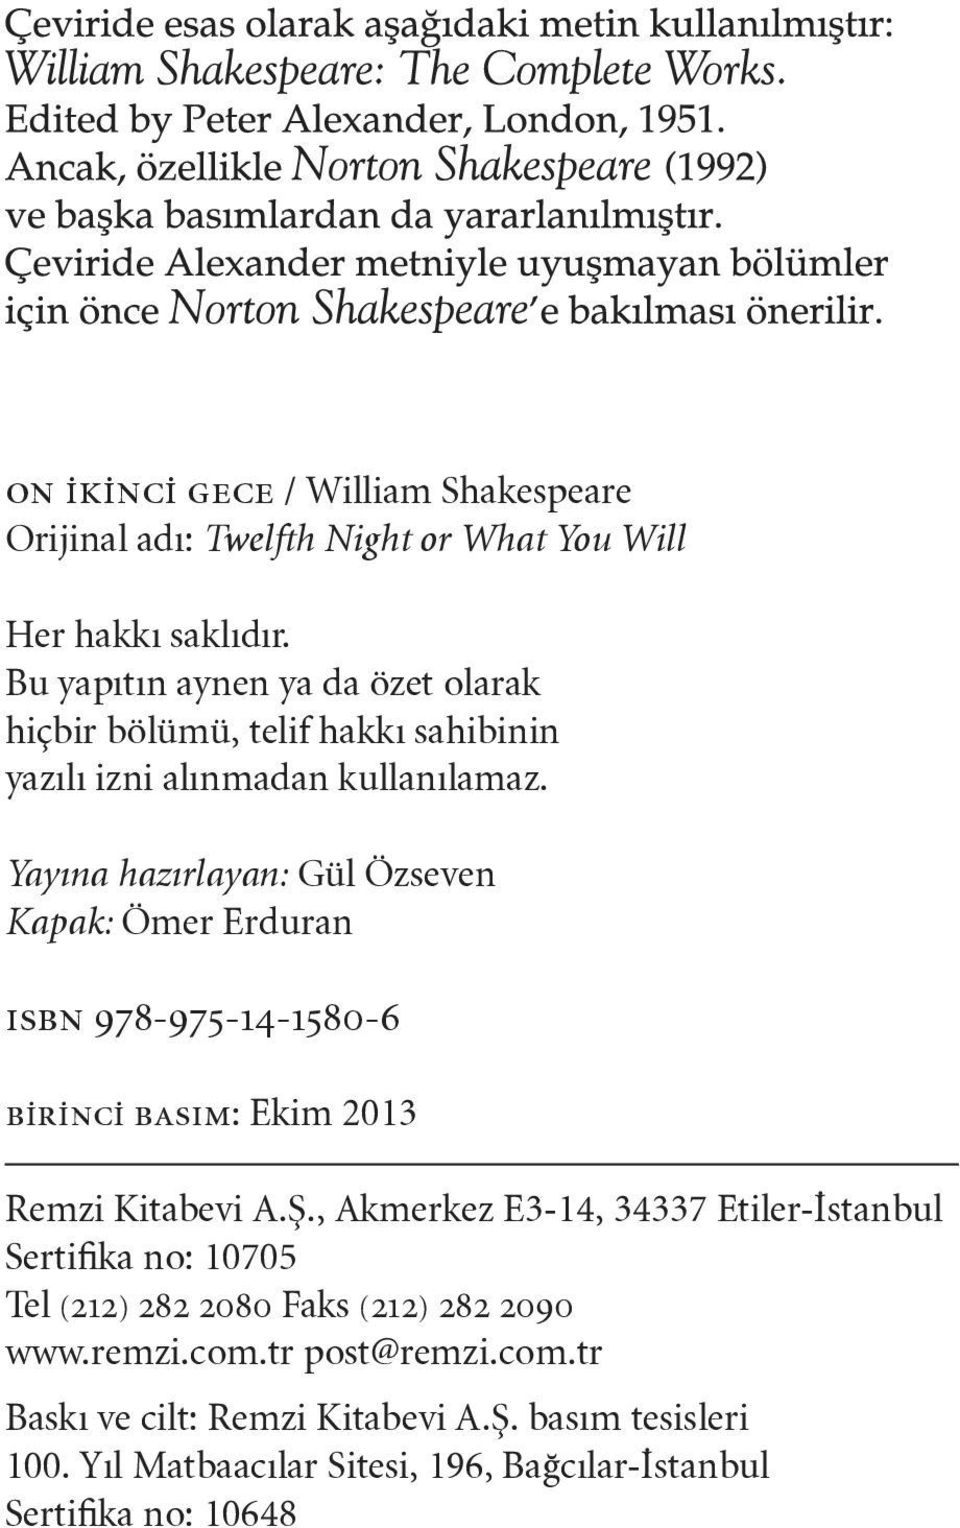 Yayına hazırlayan: Gül Özseven Kapak: Ömer Erduran ısbn 978-975-14-1580-6 birinci basım: Ekim 2013 Remzi Kitabevi A.Ş.